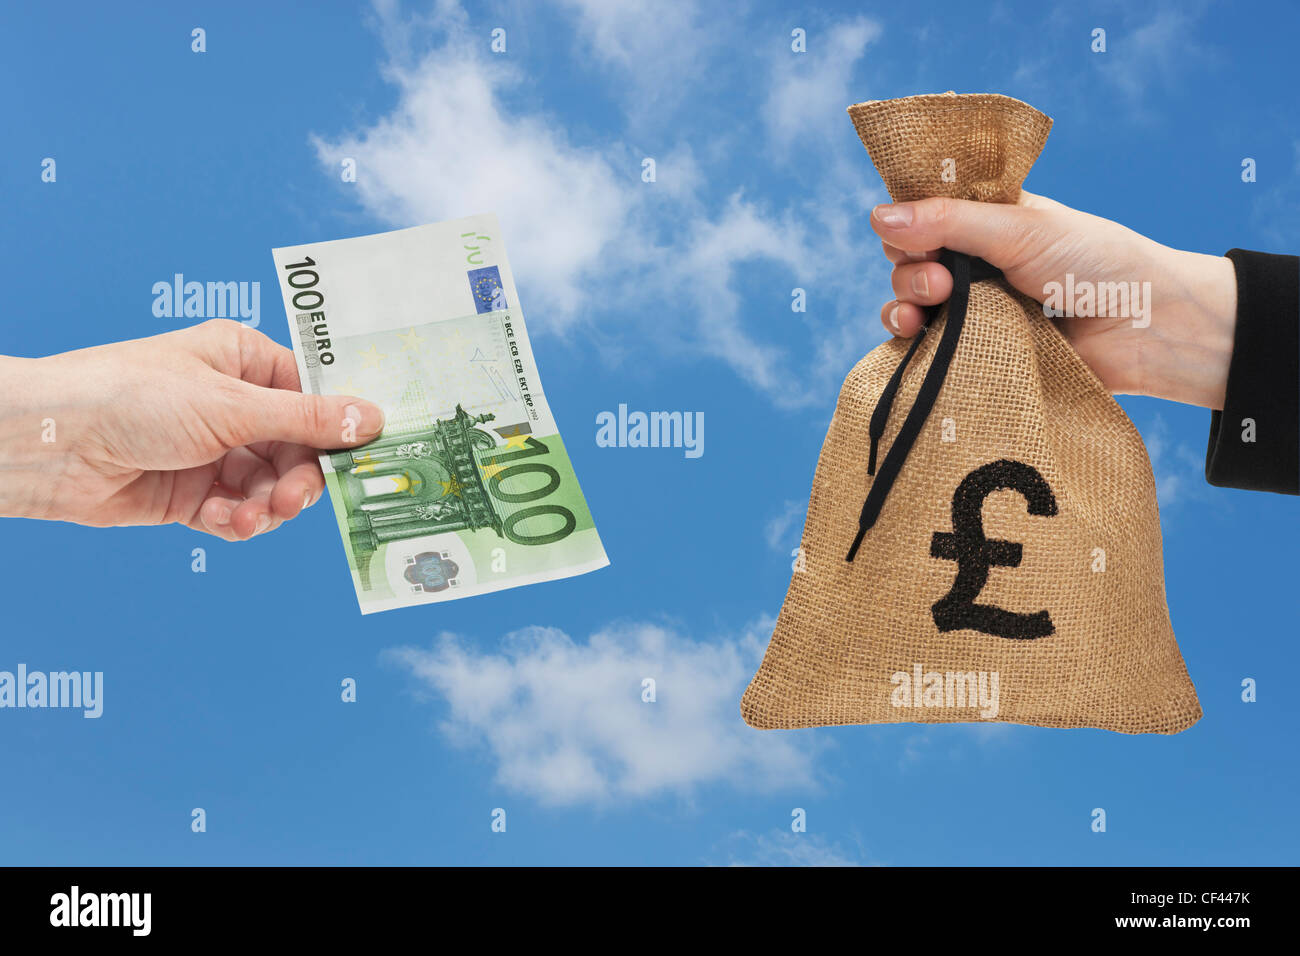 Une loi de 100 euros est tenue à la main. De l'autre côté d'un sac d'argent  avec une monnaie livre signe est tenue à la main Photo Stock - Alamy